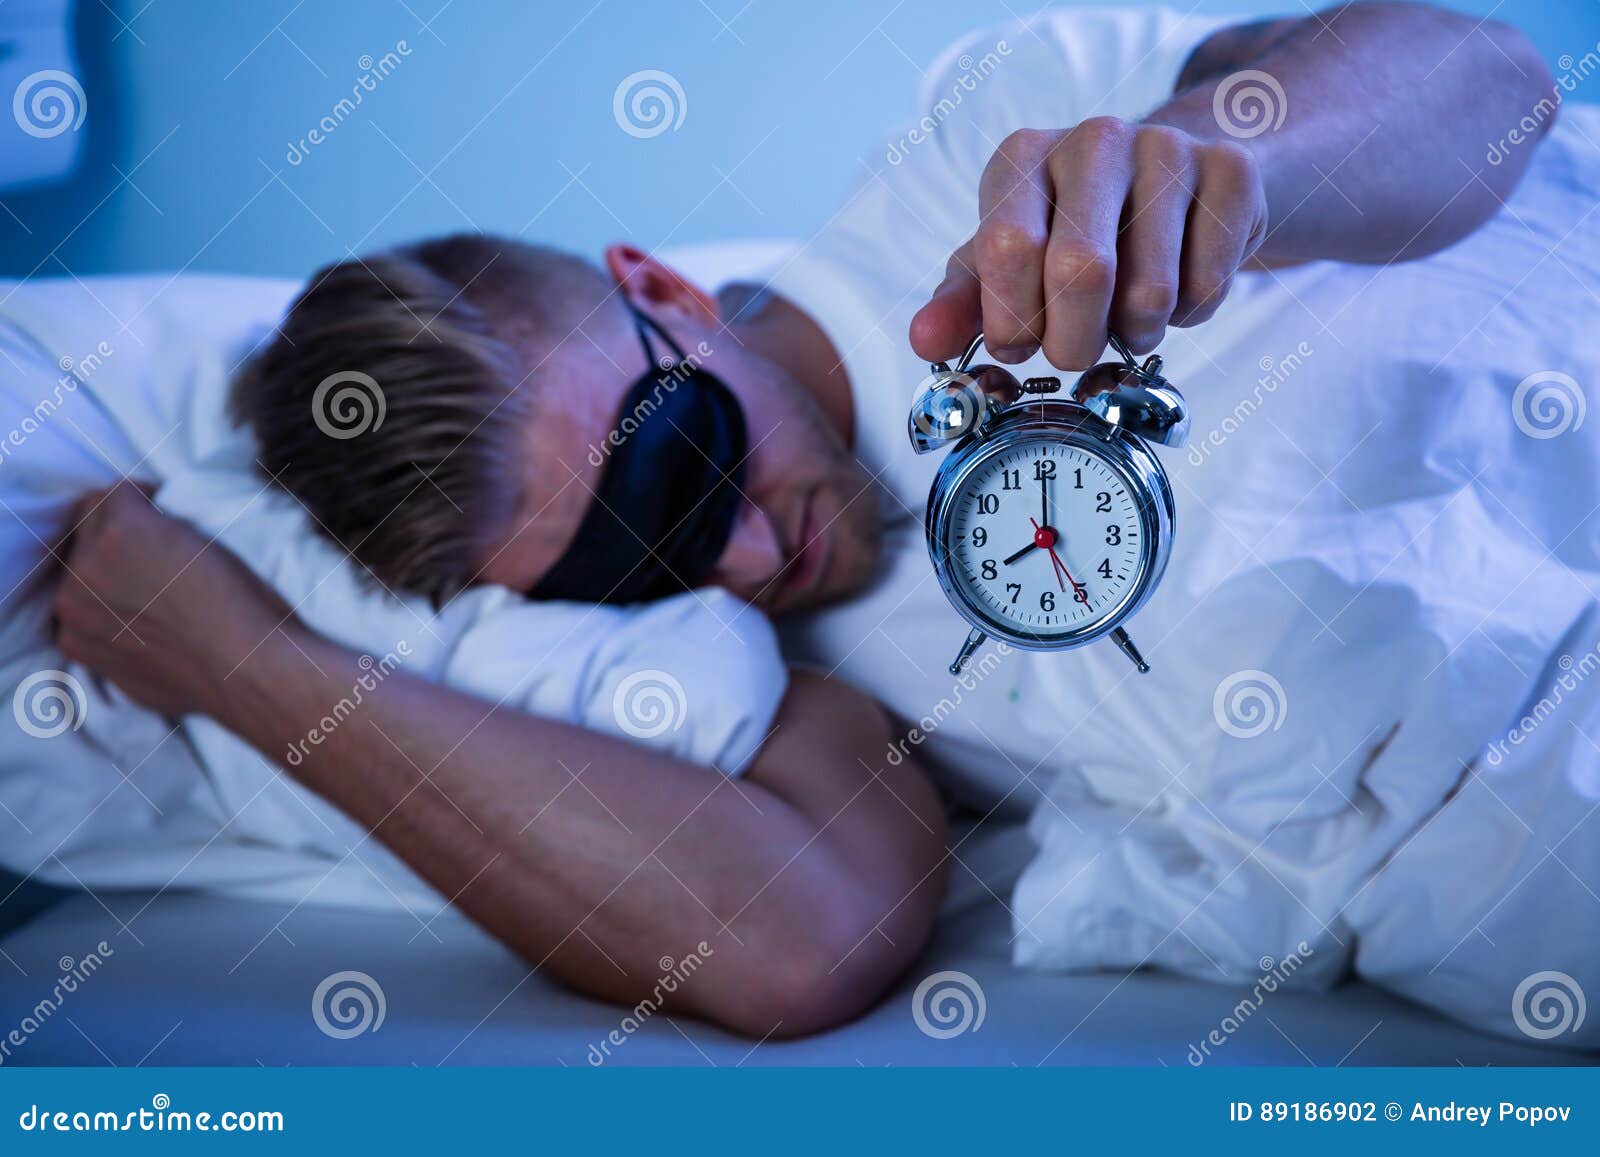 Часовщик сонных махинаций. Биологические часы. Часы на руках на кровати. Биологические часы мужчины.